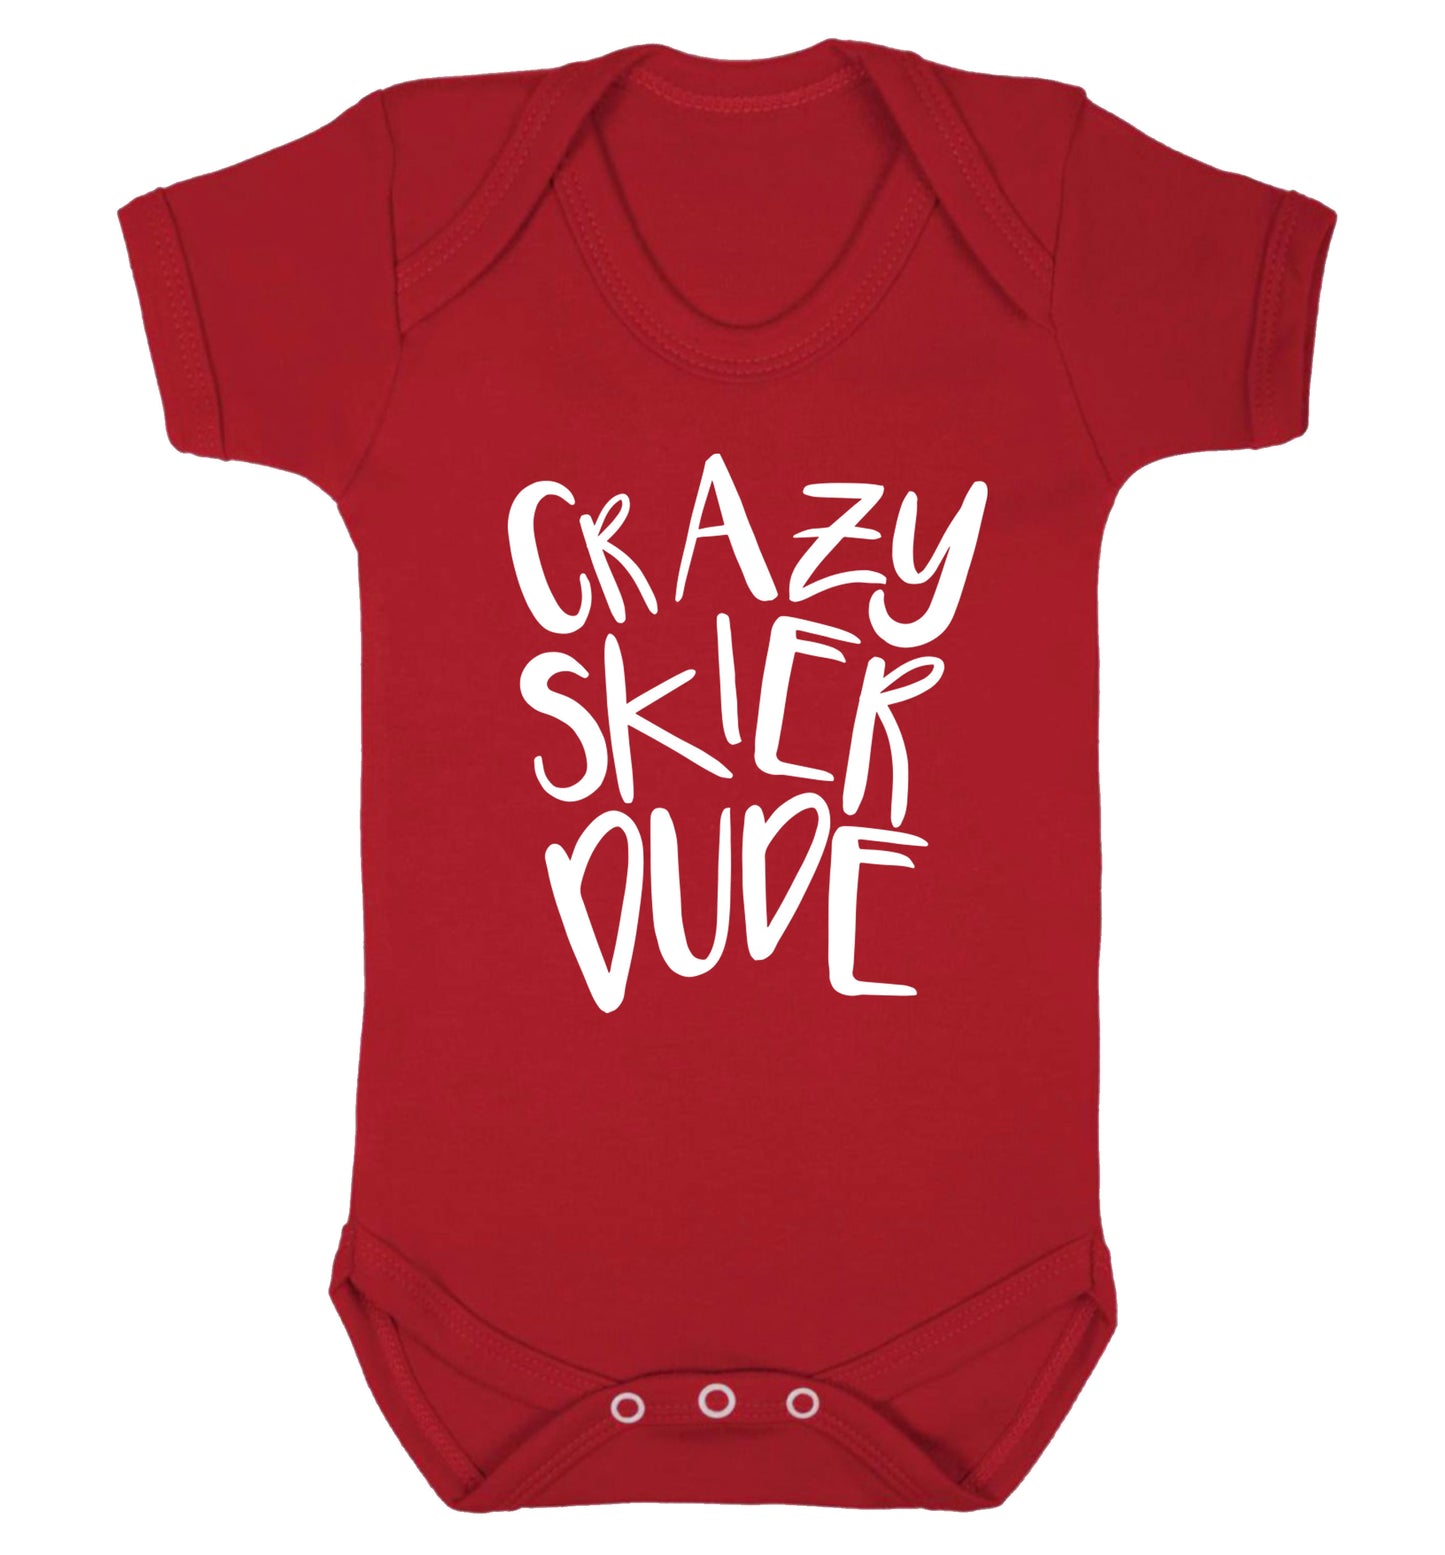 Crazy skier dude Baby Vest red 18-24 months